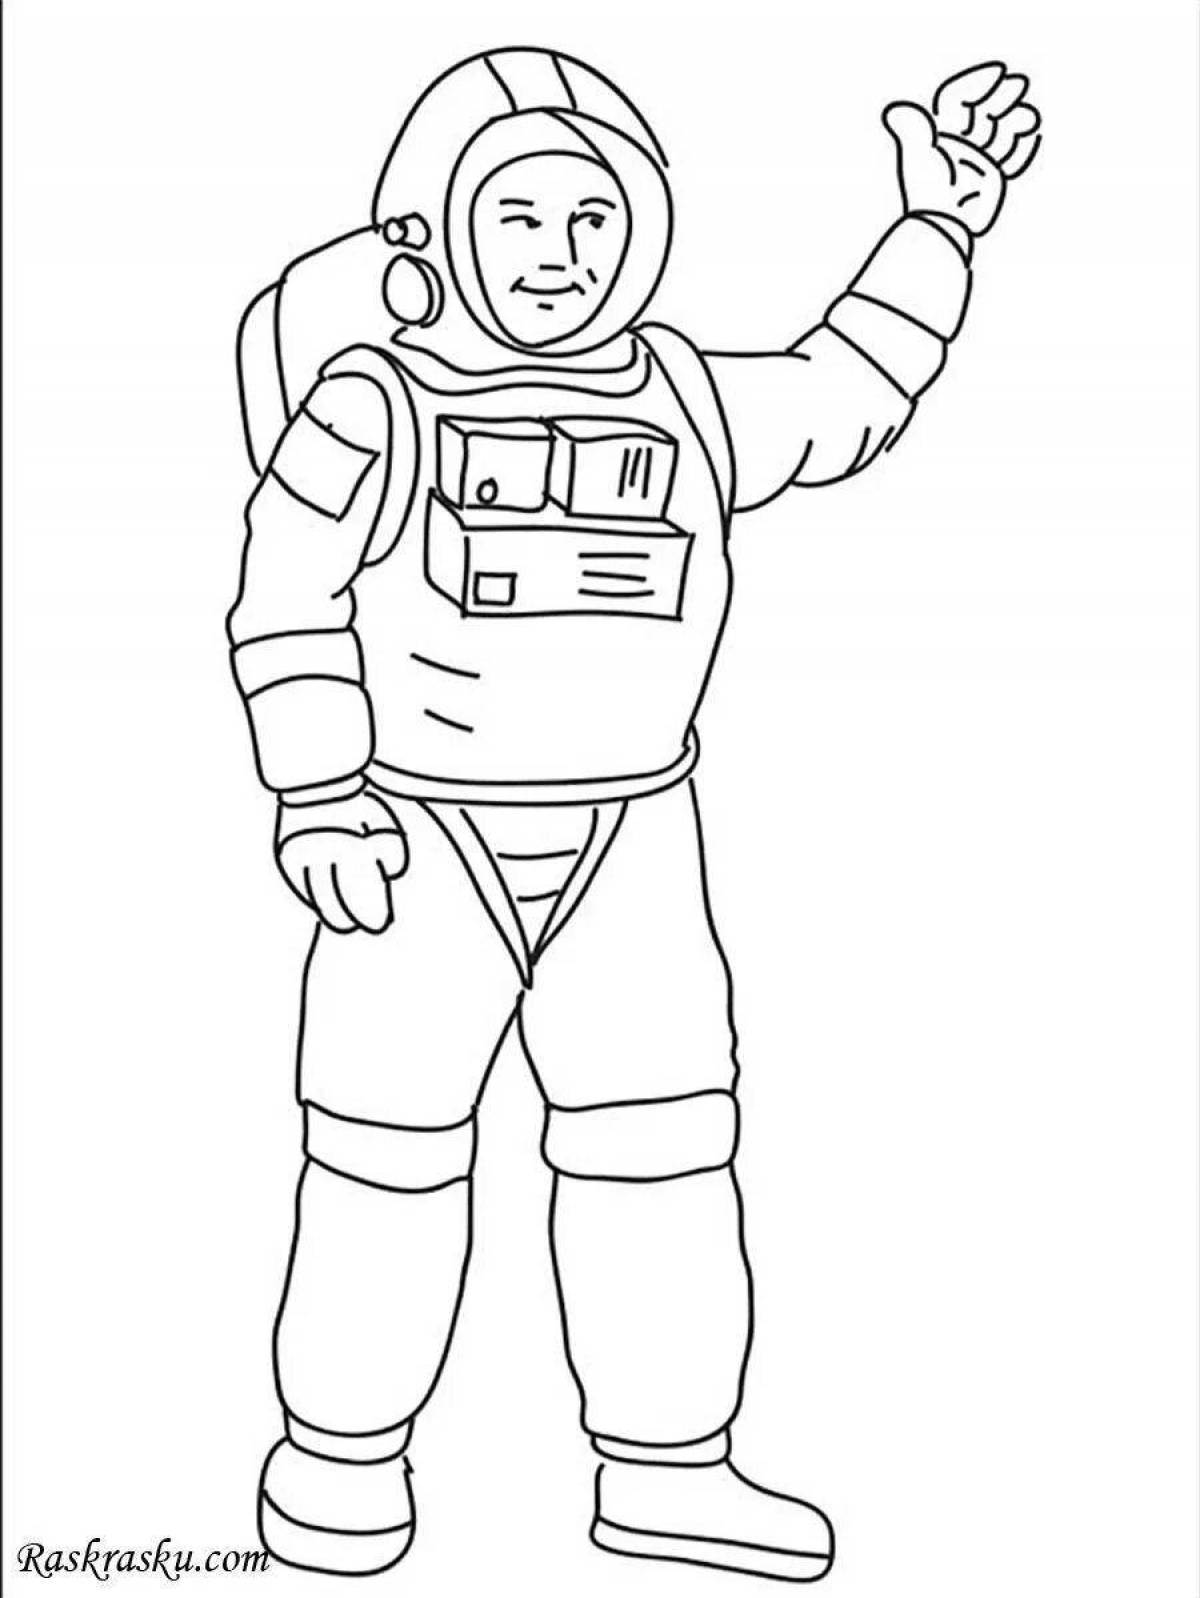 Космонавт шаблон для вырезания распечатать. Космонавт раскраска для детей. Раскраска космонавт в скафандре. Космонавт раскраска для малышей. Космонавт для раскрашивания для детей.